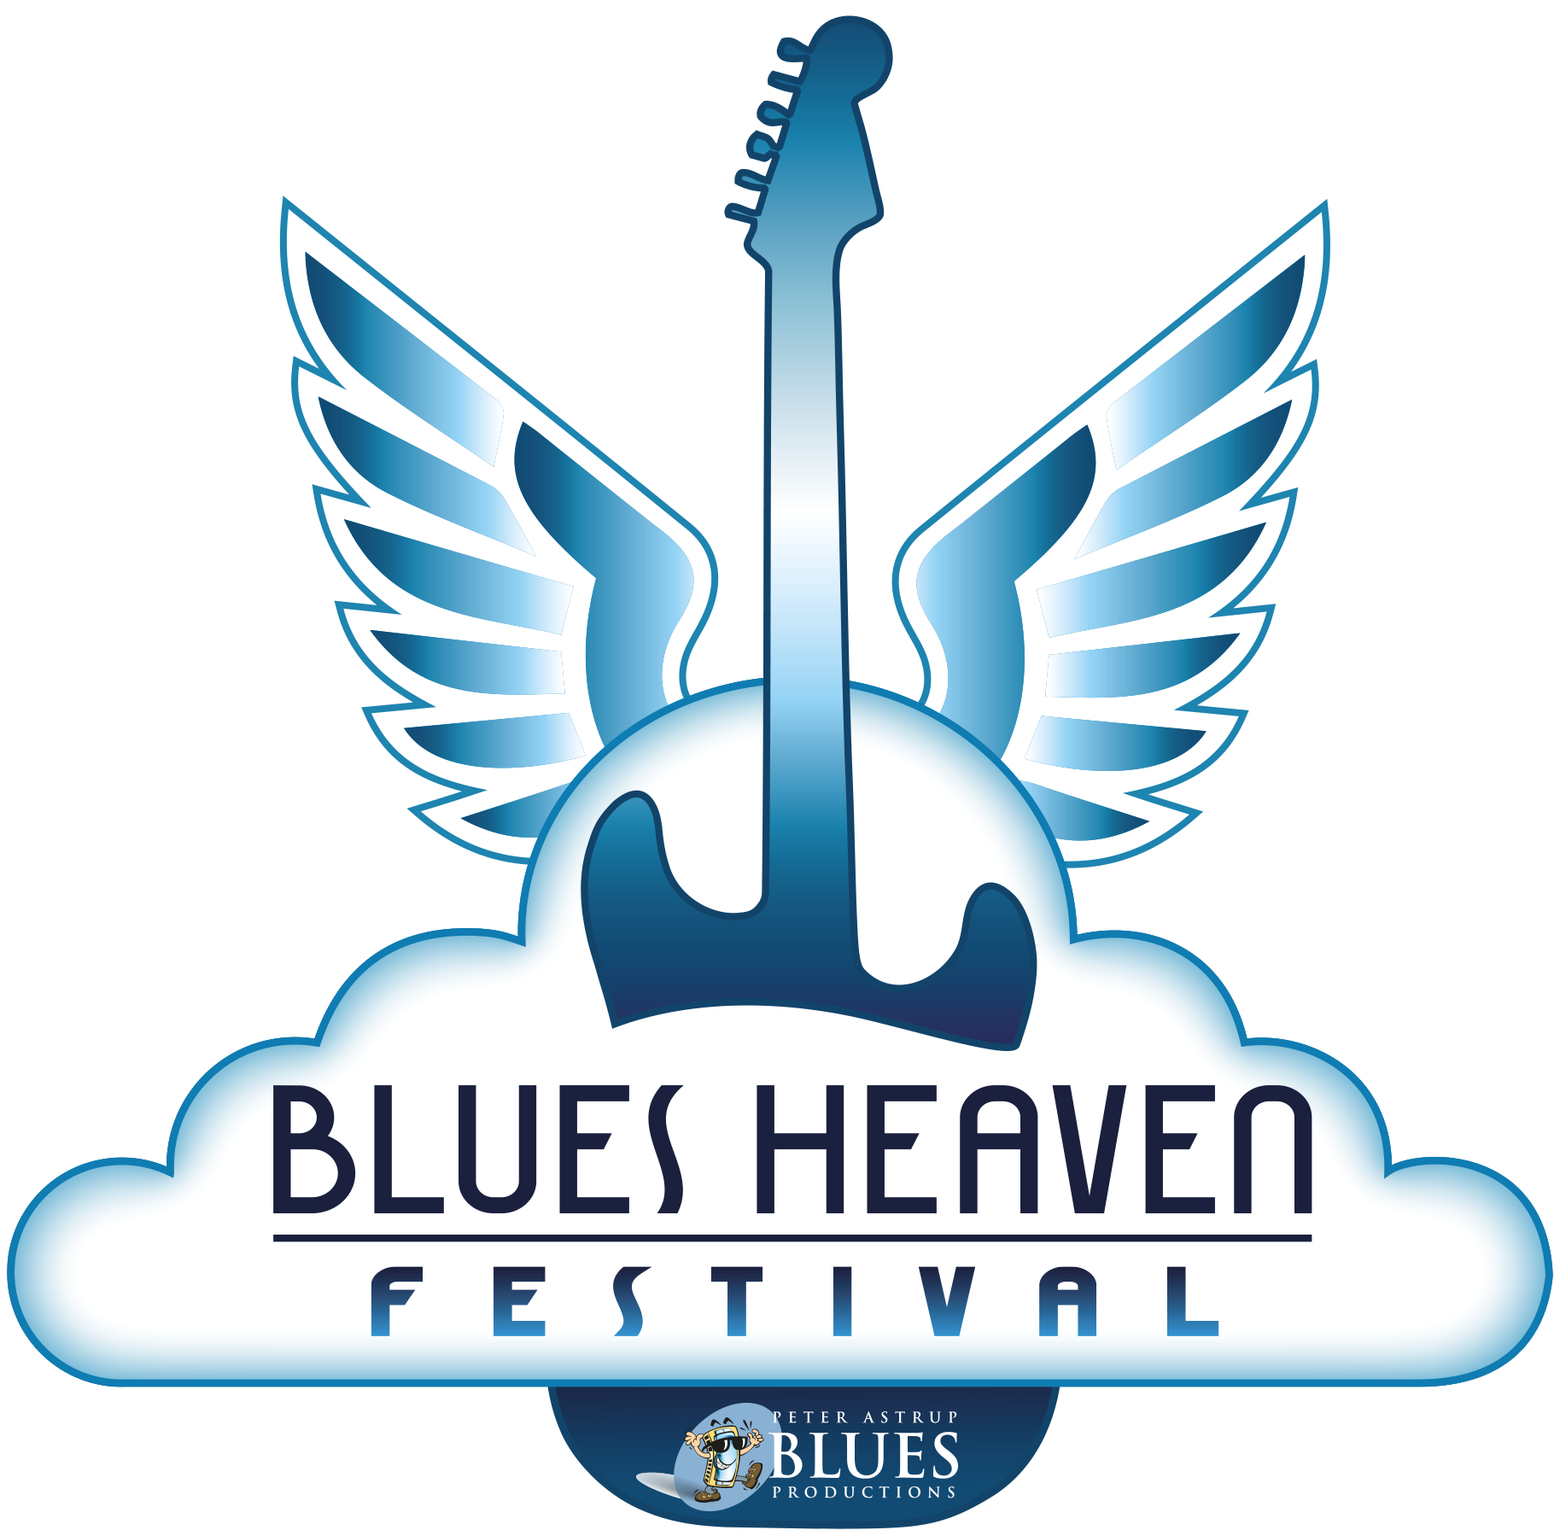 image of the logo for Blues Heaven Festival in Denmark